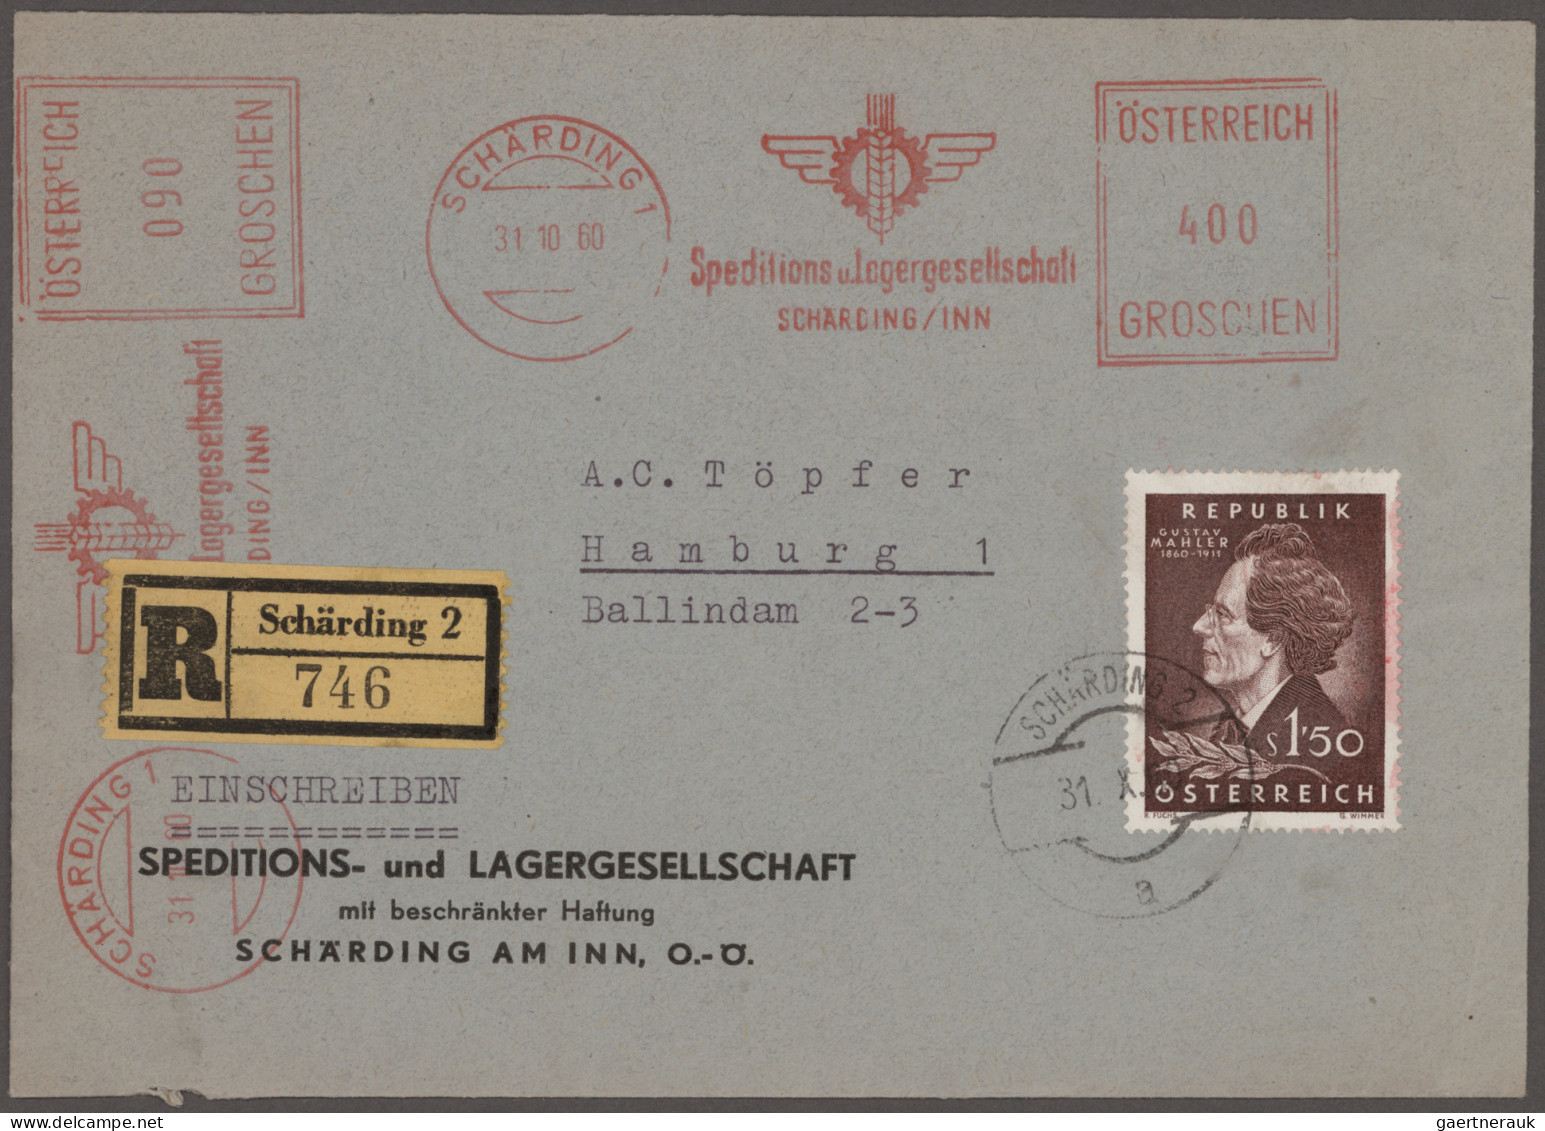 Österreich: 1875/1990 (ca.), umfangreicher Posten von ca. 580 Briefen und Karten